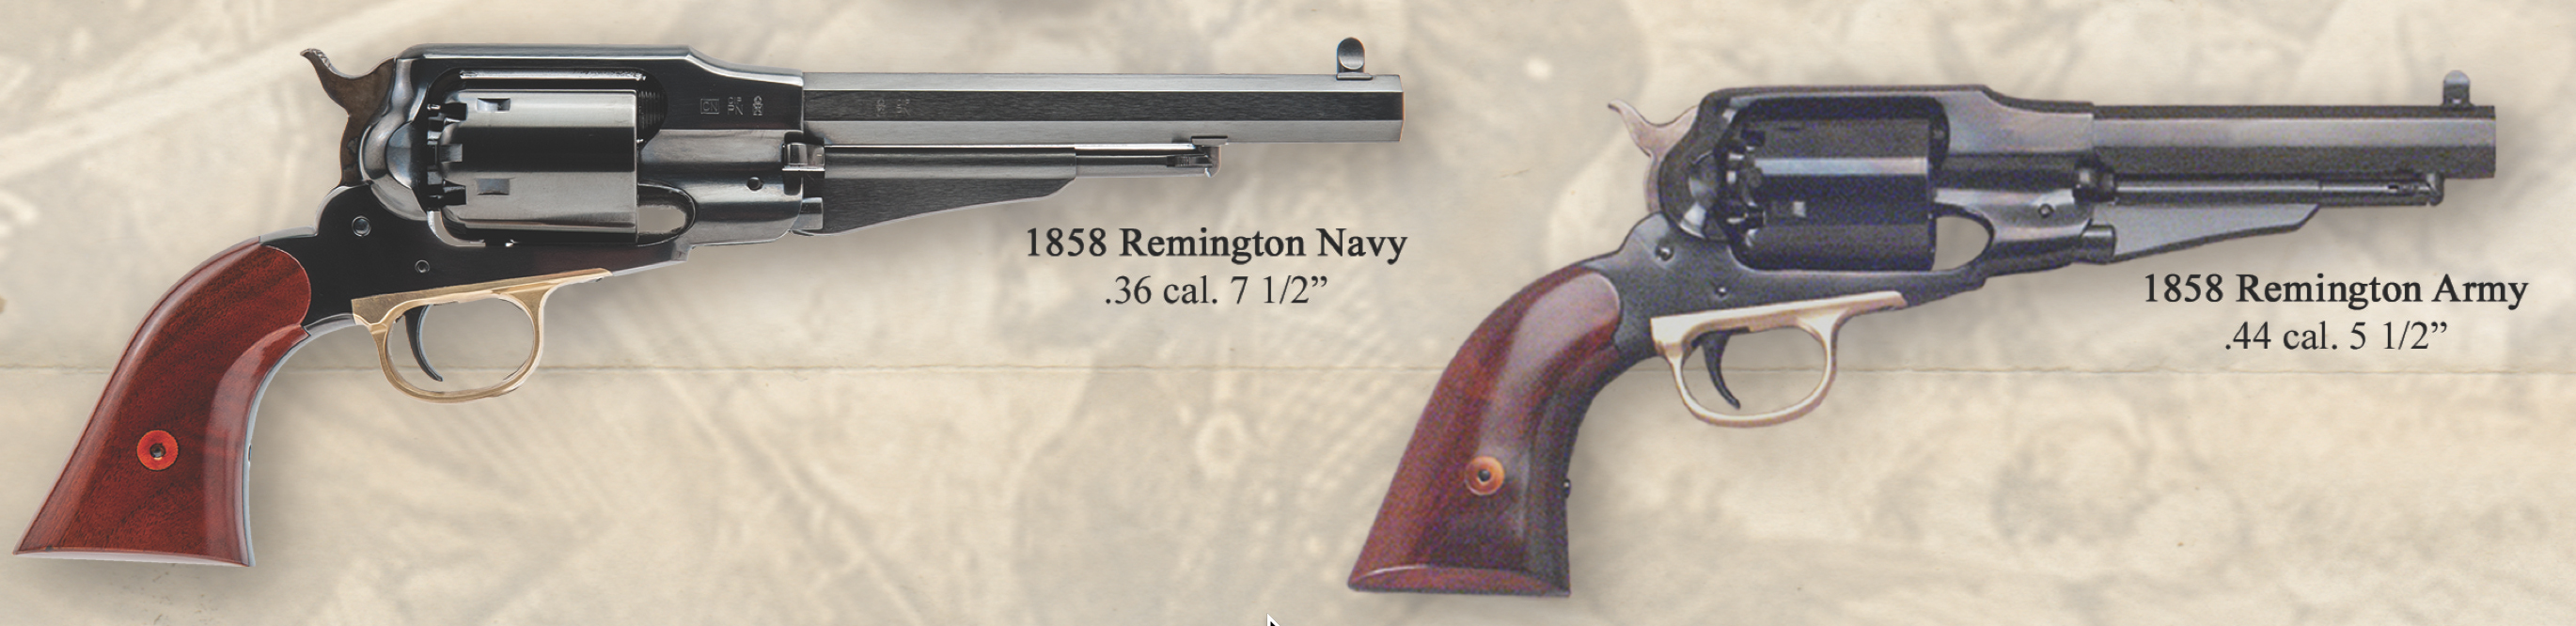 1858 Remington Army